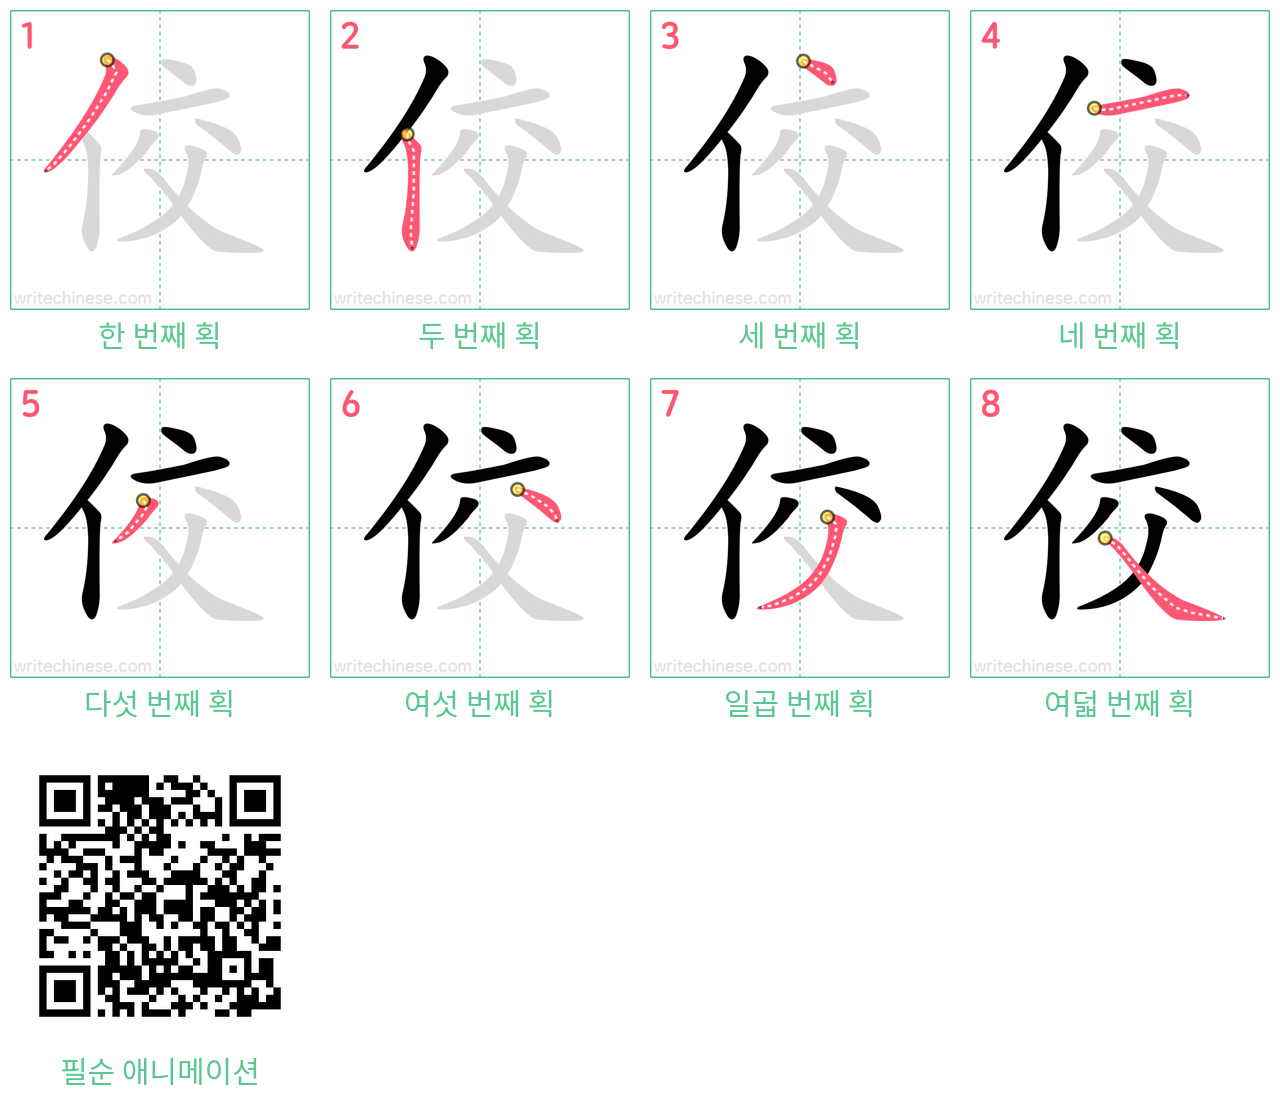 佼 step-by-step stroke order diagrams